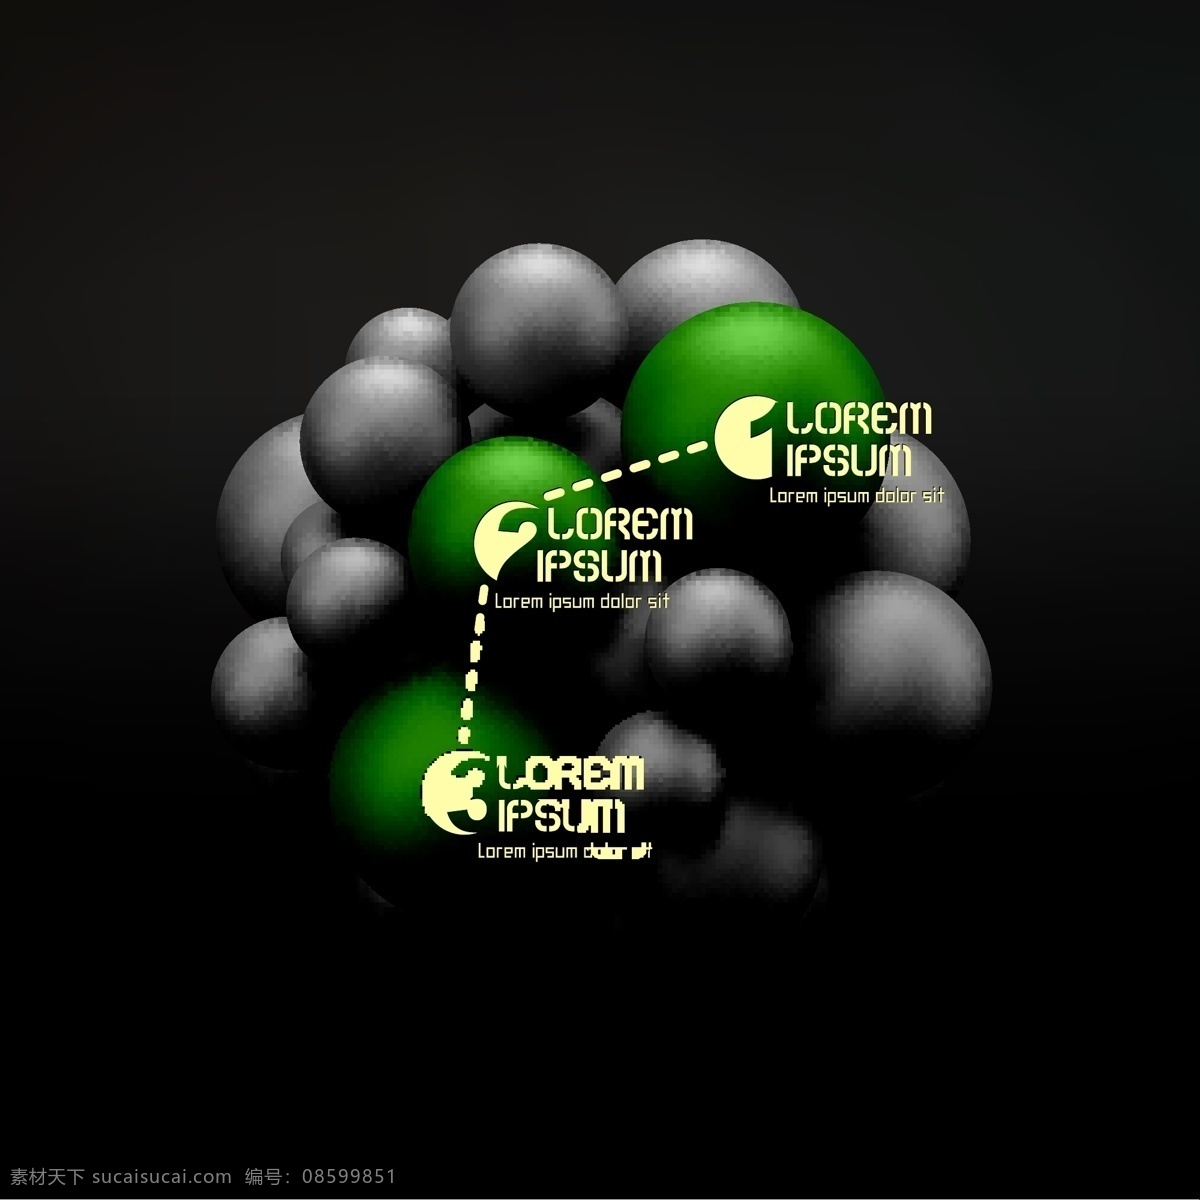 黑绿色 球形 图案 黑色 绿色 立体背景 立体图案 背景图案 3d背景 生活百科 矢量素材